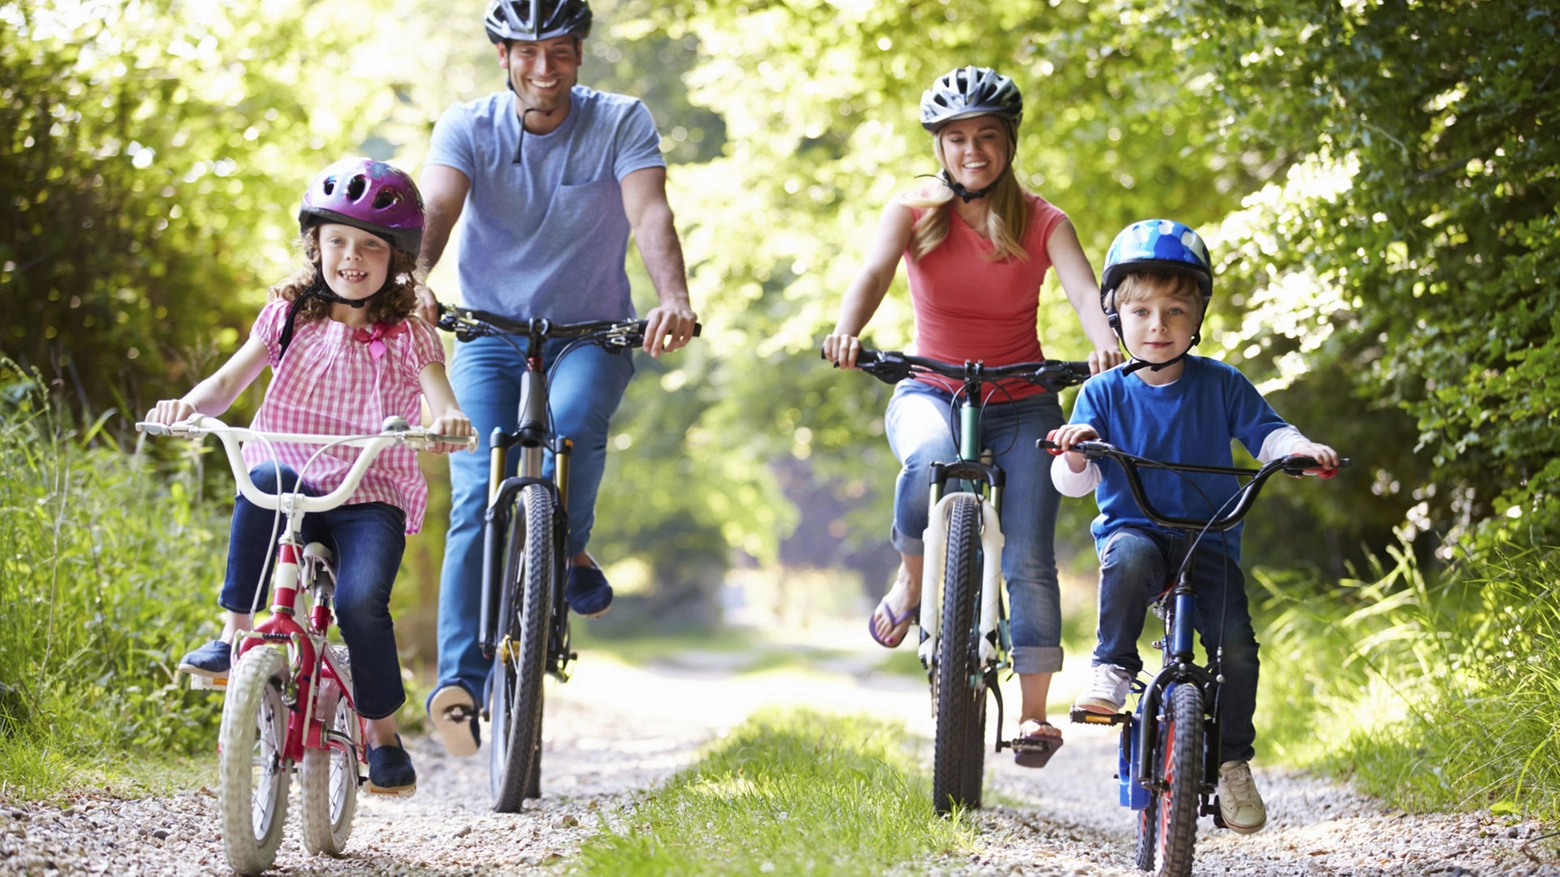 Tutta la famiglia in bici, una tendenza emergente